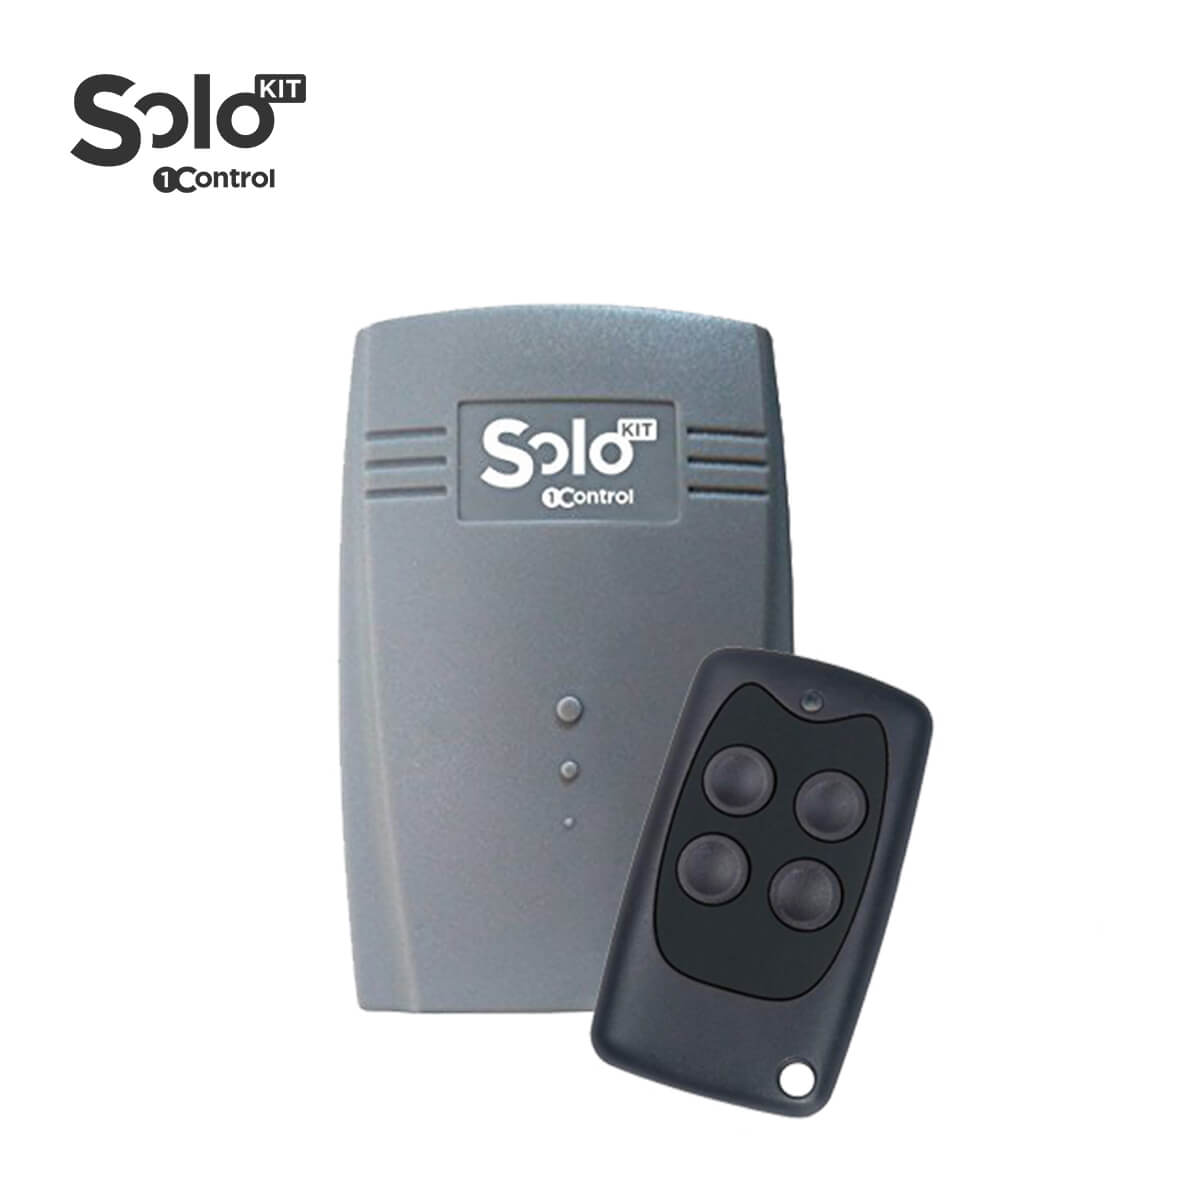 SOLO KIT ricevente telecomando per compatibilita apricancello SOLO